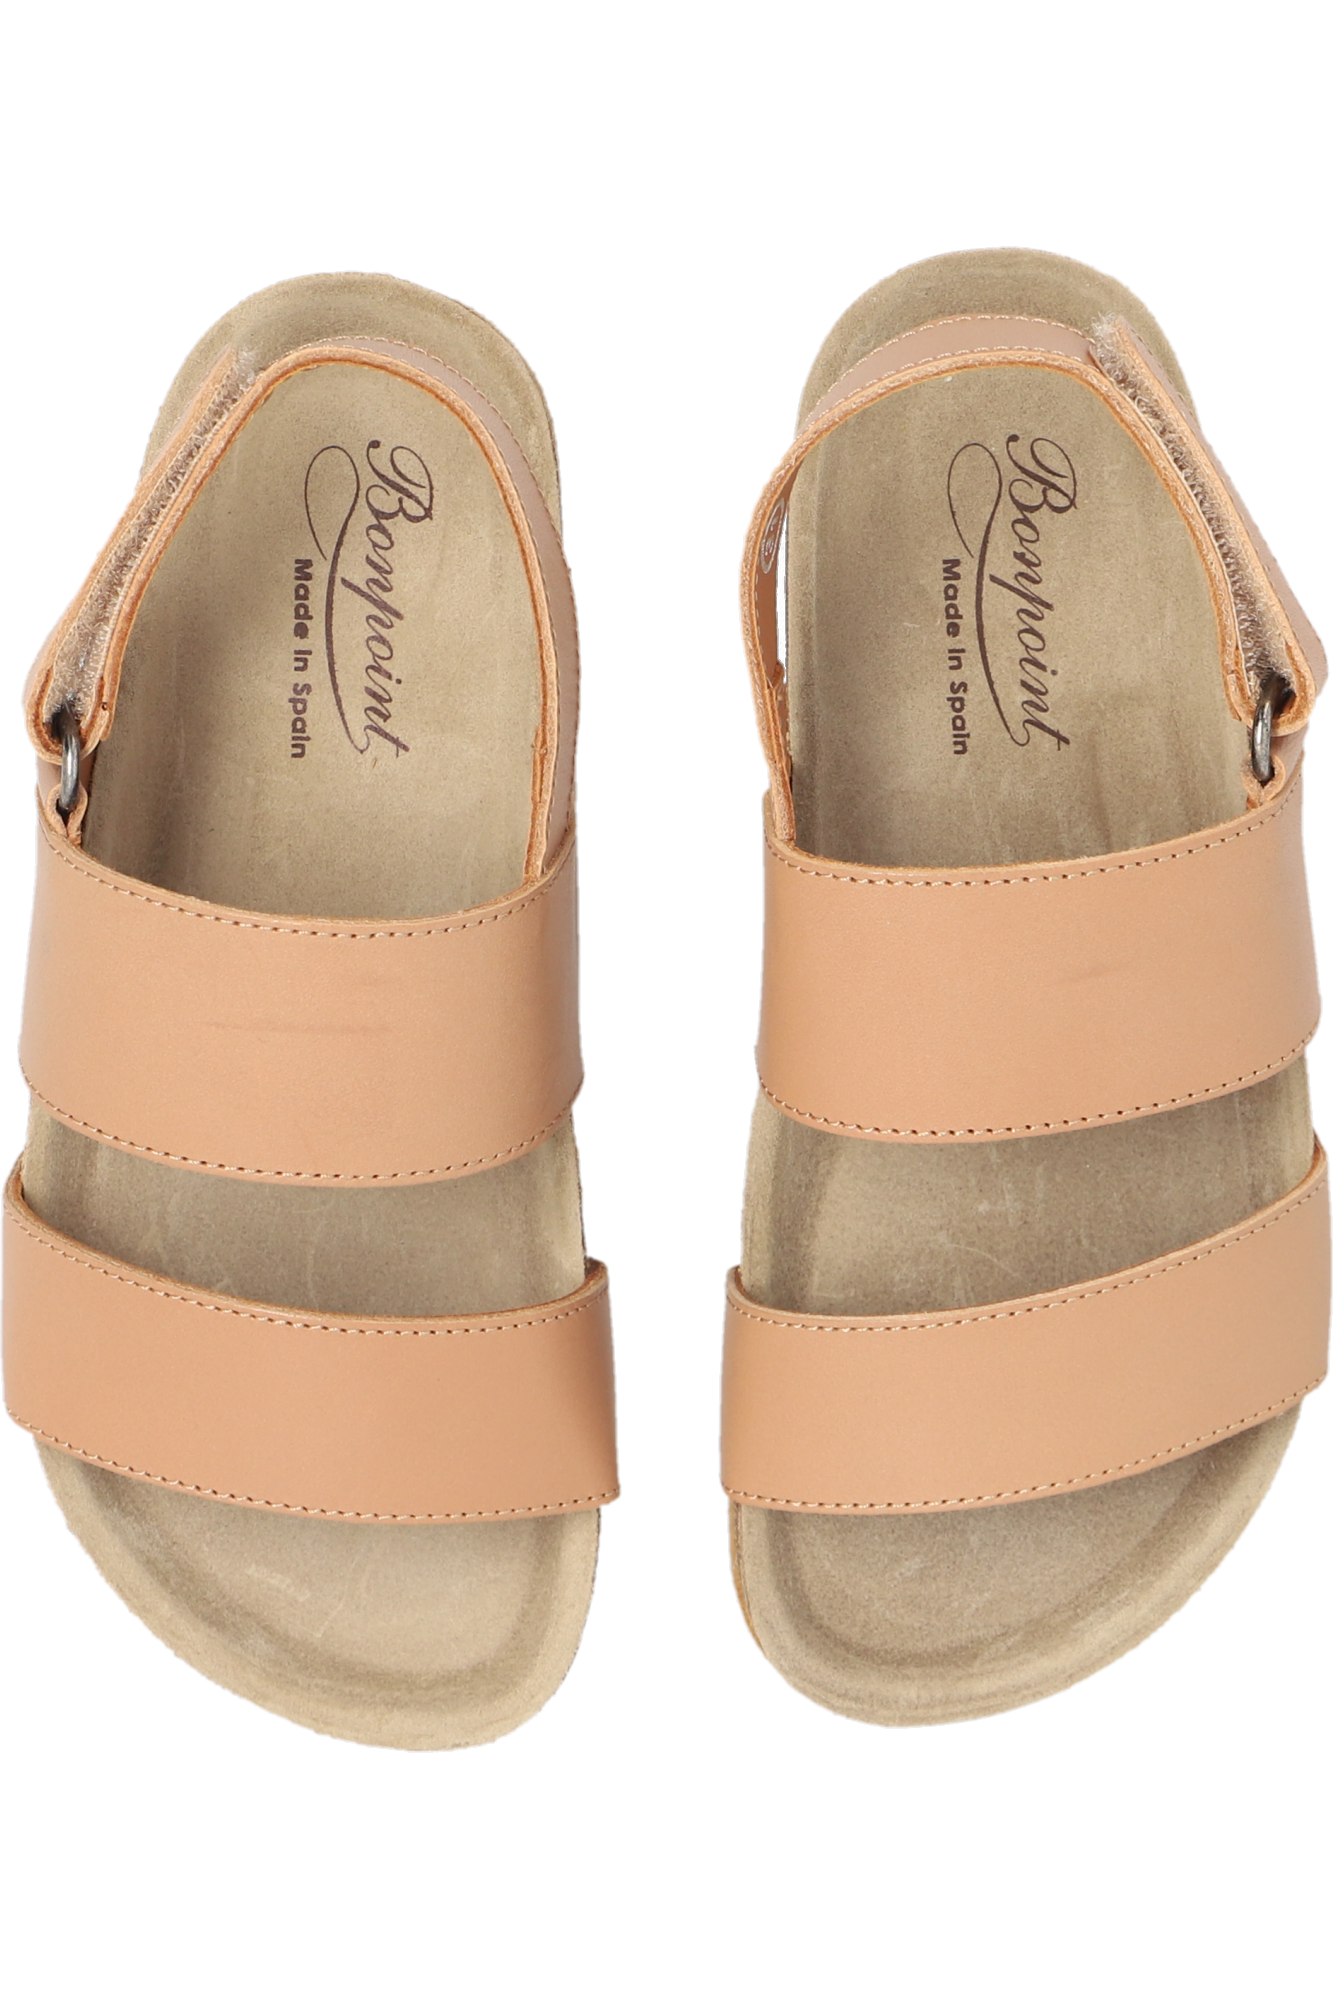 Bonpoint  ‘Agostino’ sandals